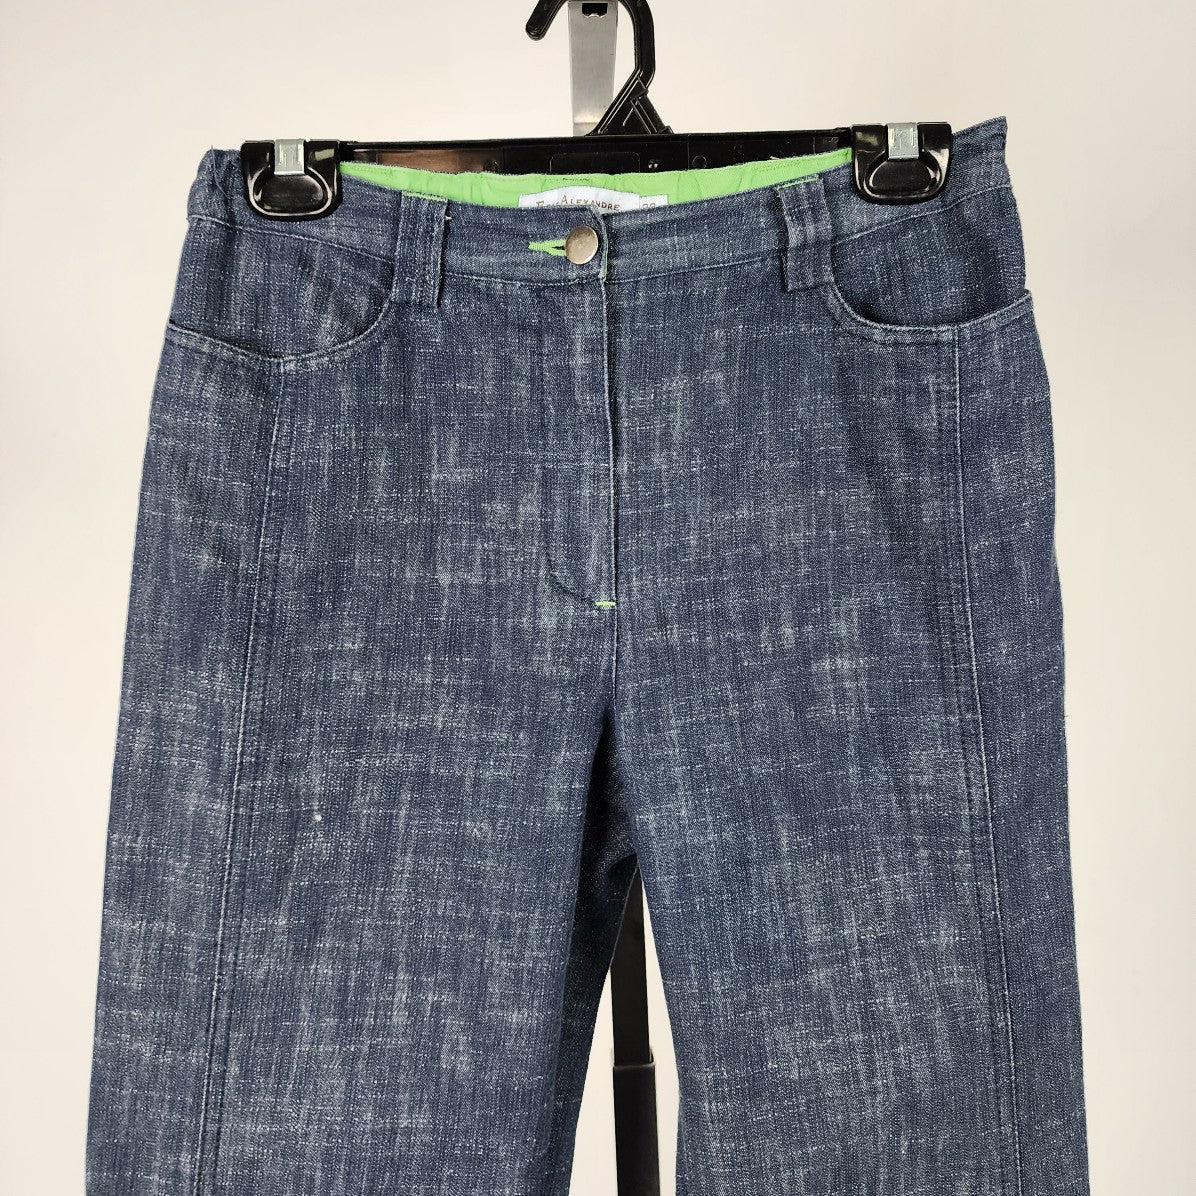 Eric Alexandre Blue Cotton Capri Pants Size 8